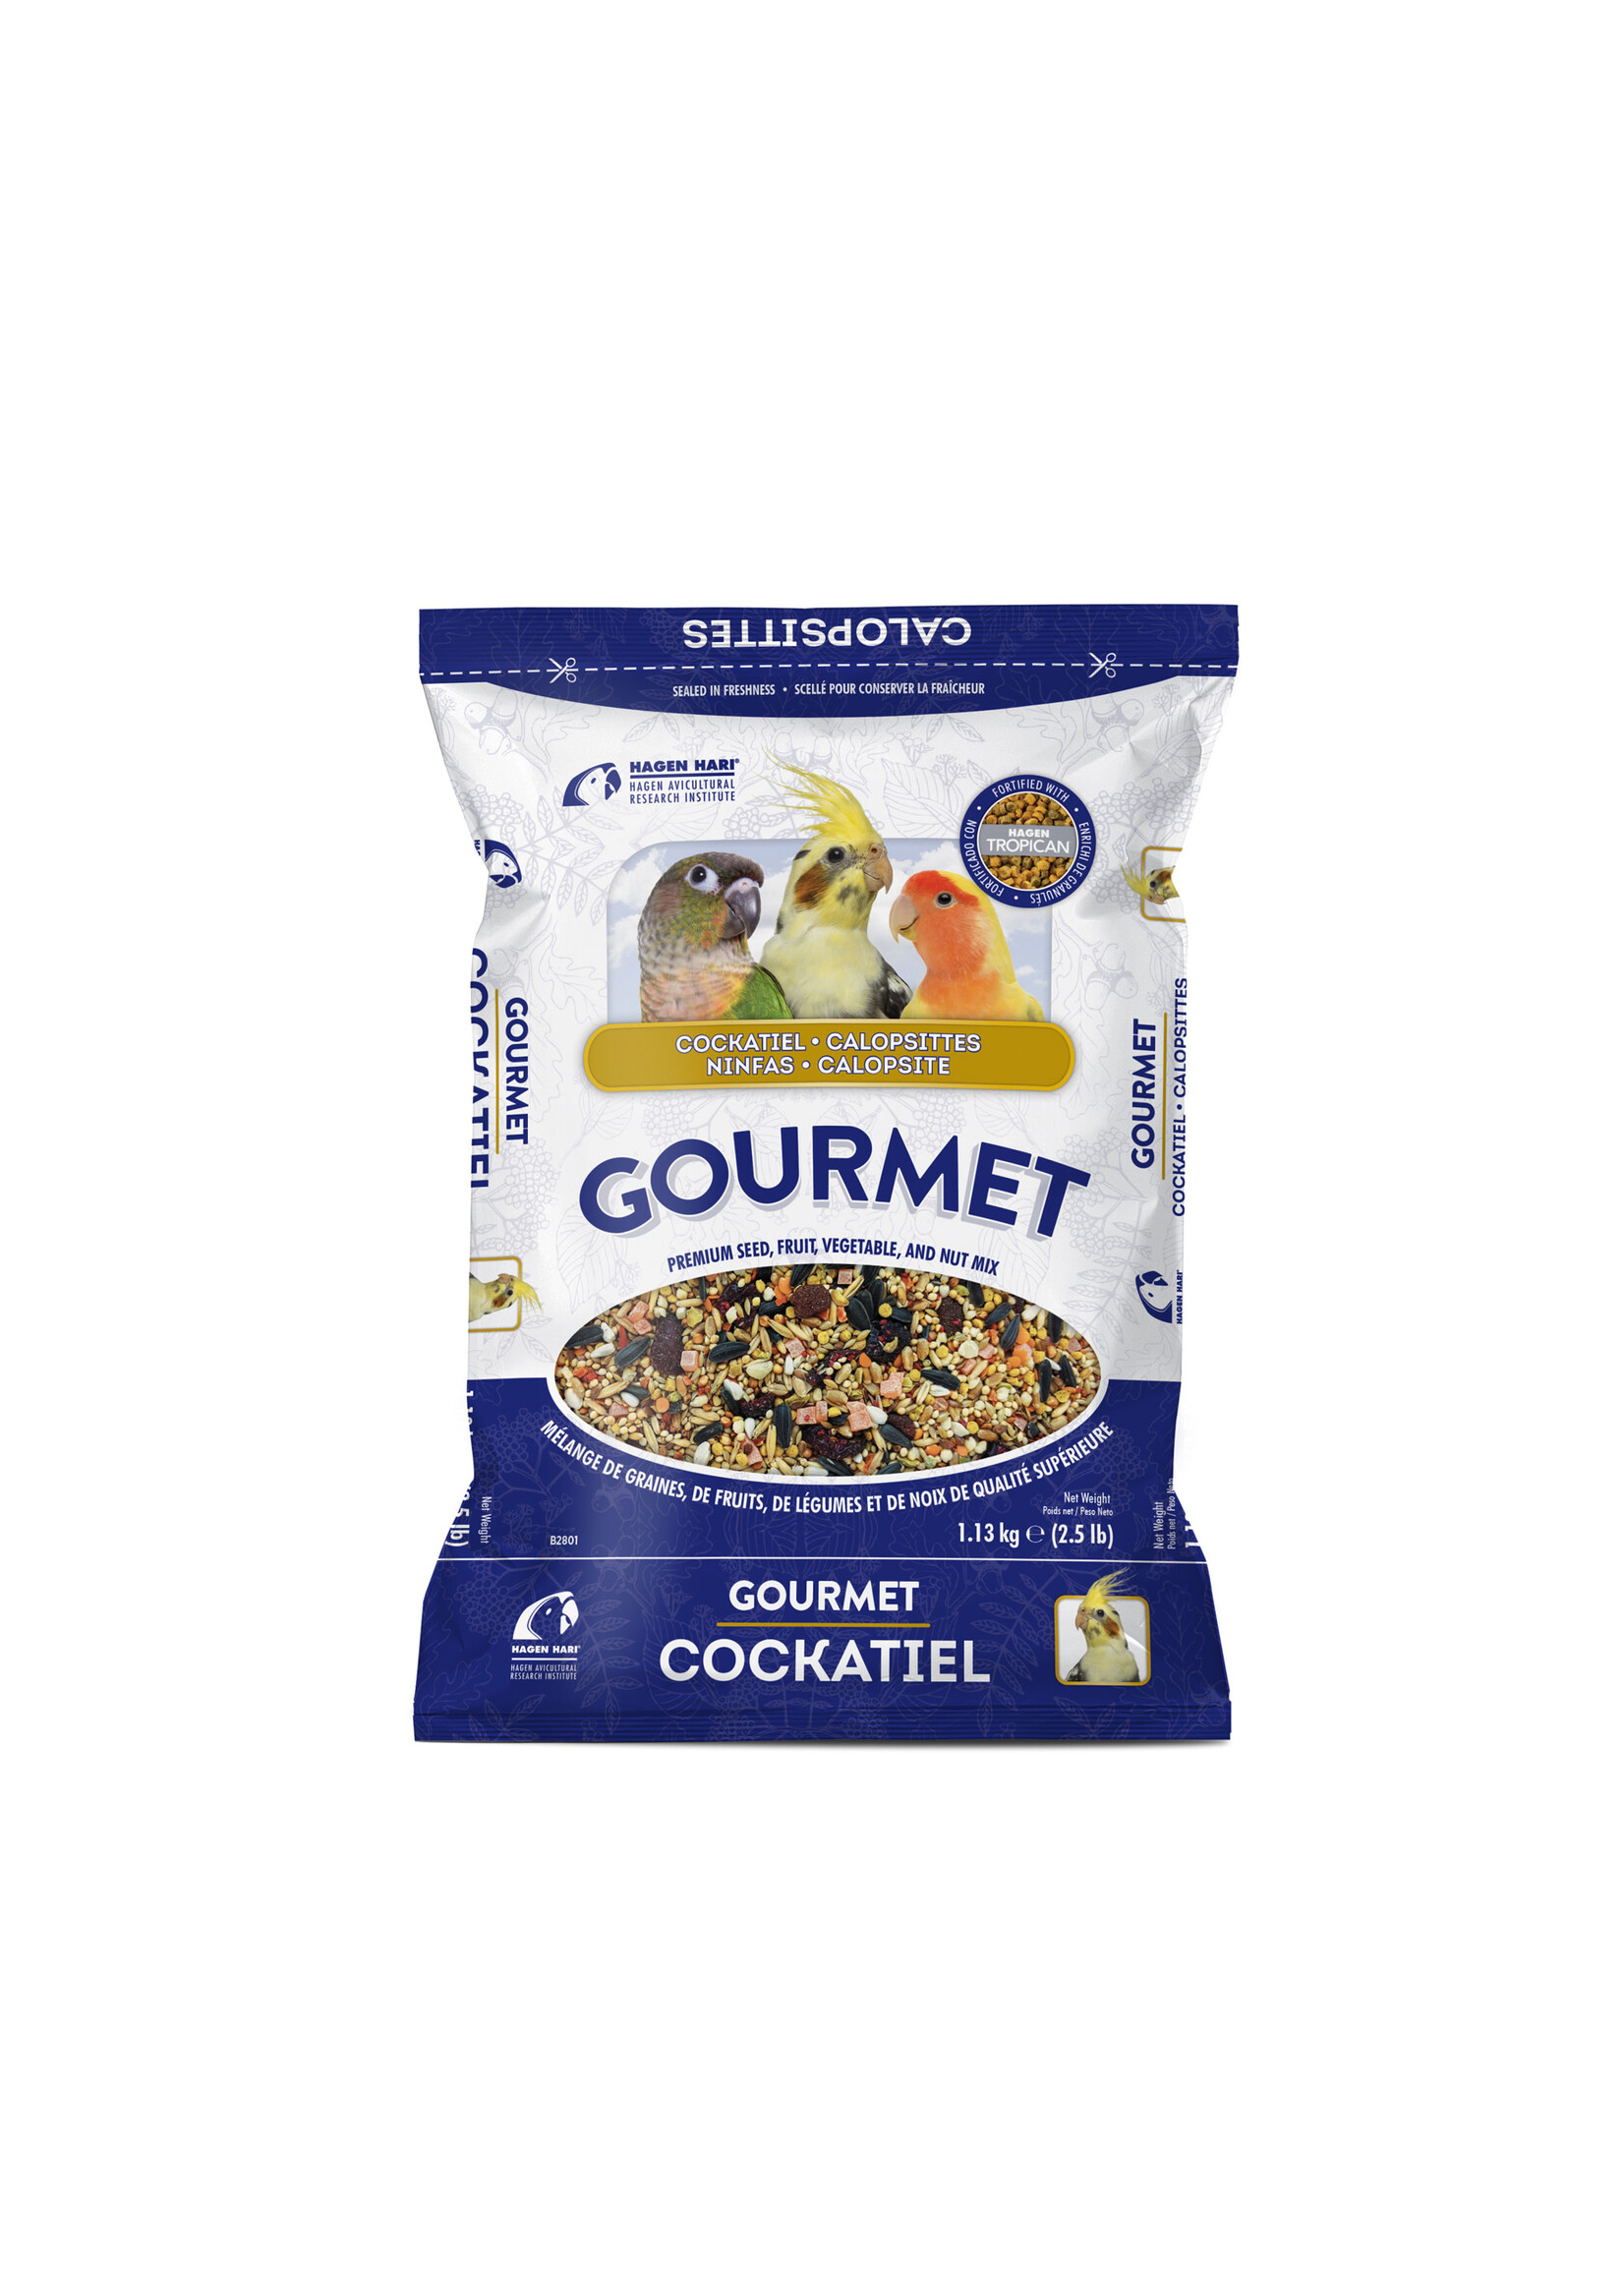 Hari HARI - Gourmet Premium Seed Mix For Cockatiels - 1.13 kg (2.5 lb)